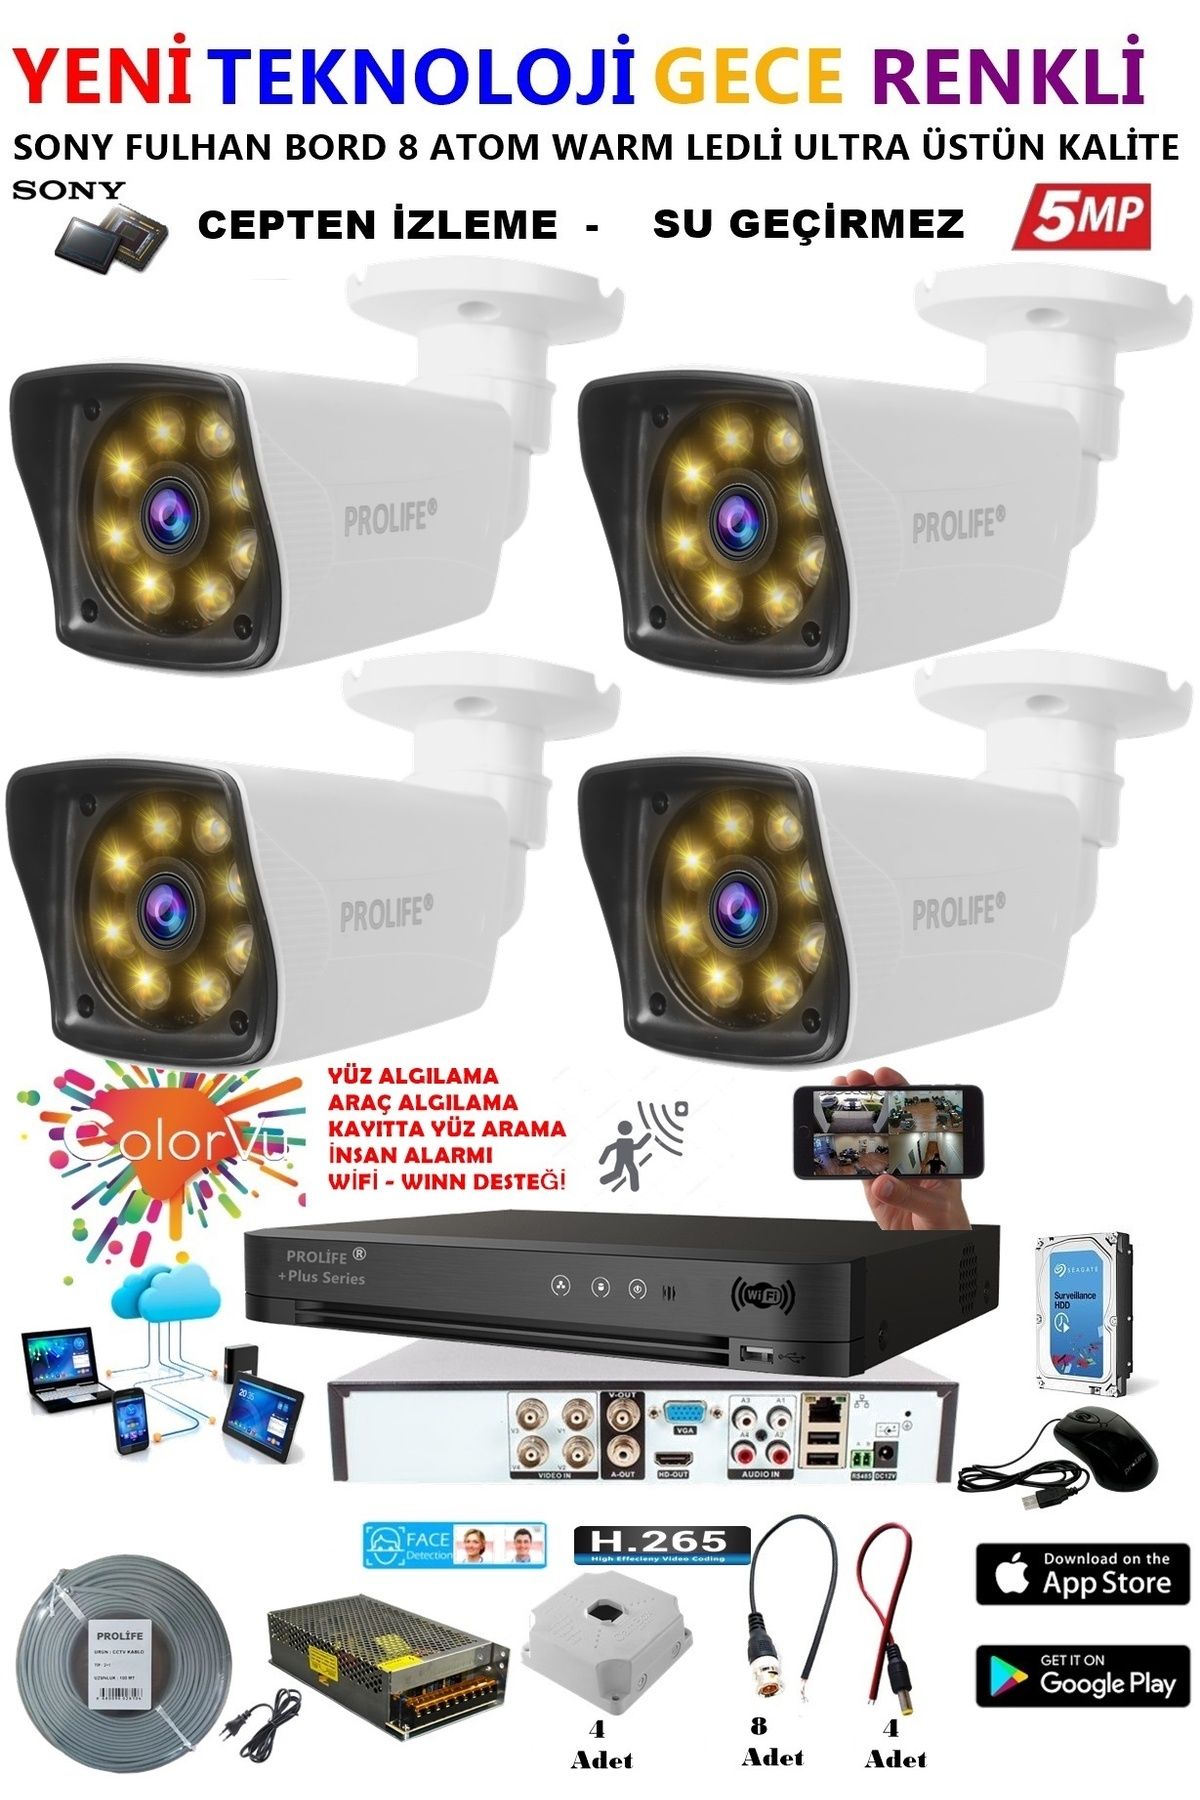 PROLİFE 4 Kameralı 5 Mp Gece Renkli 8 Adet Warm Ledli Yüz Ve Araç Algılamalı Güvenlik Kamerası Seti